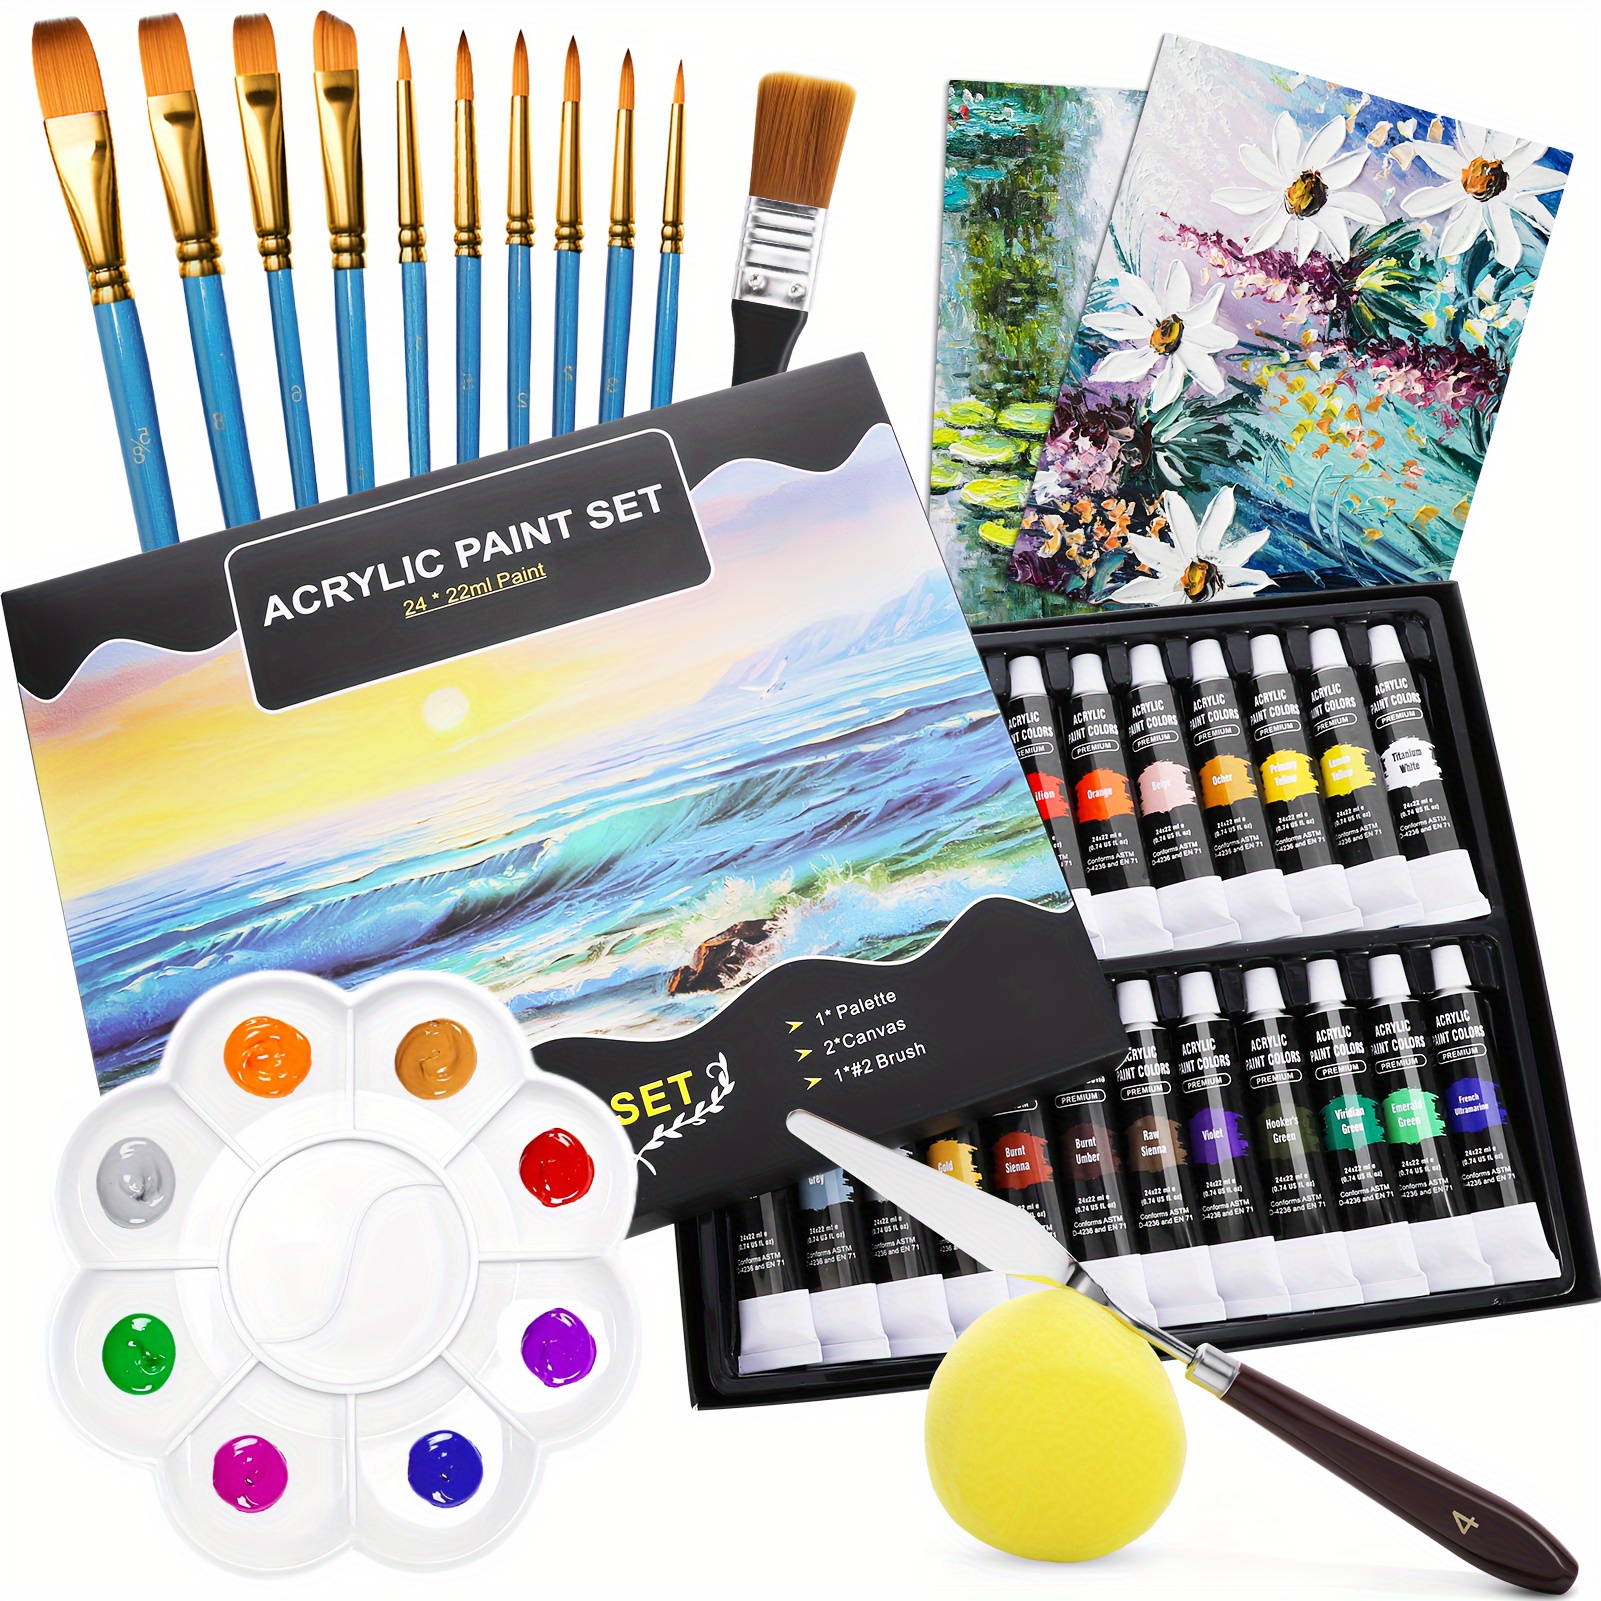 Art Alternatives Economy Gouache Paint Set, 12ml Tubes, 24-Color Set